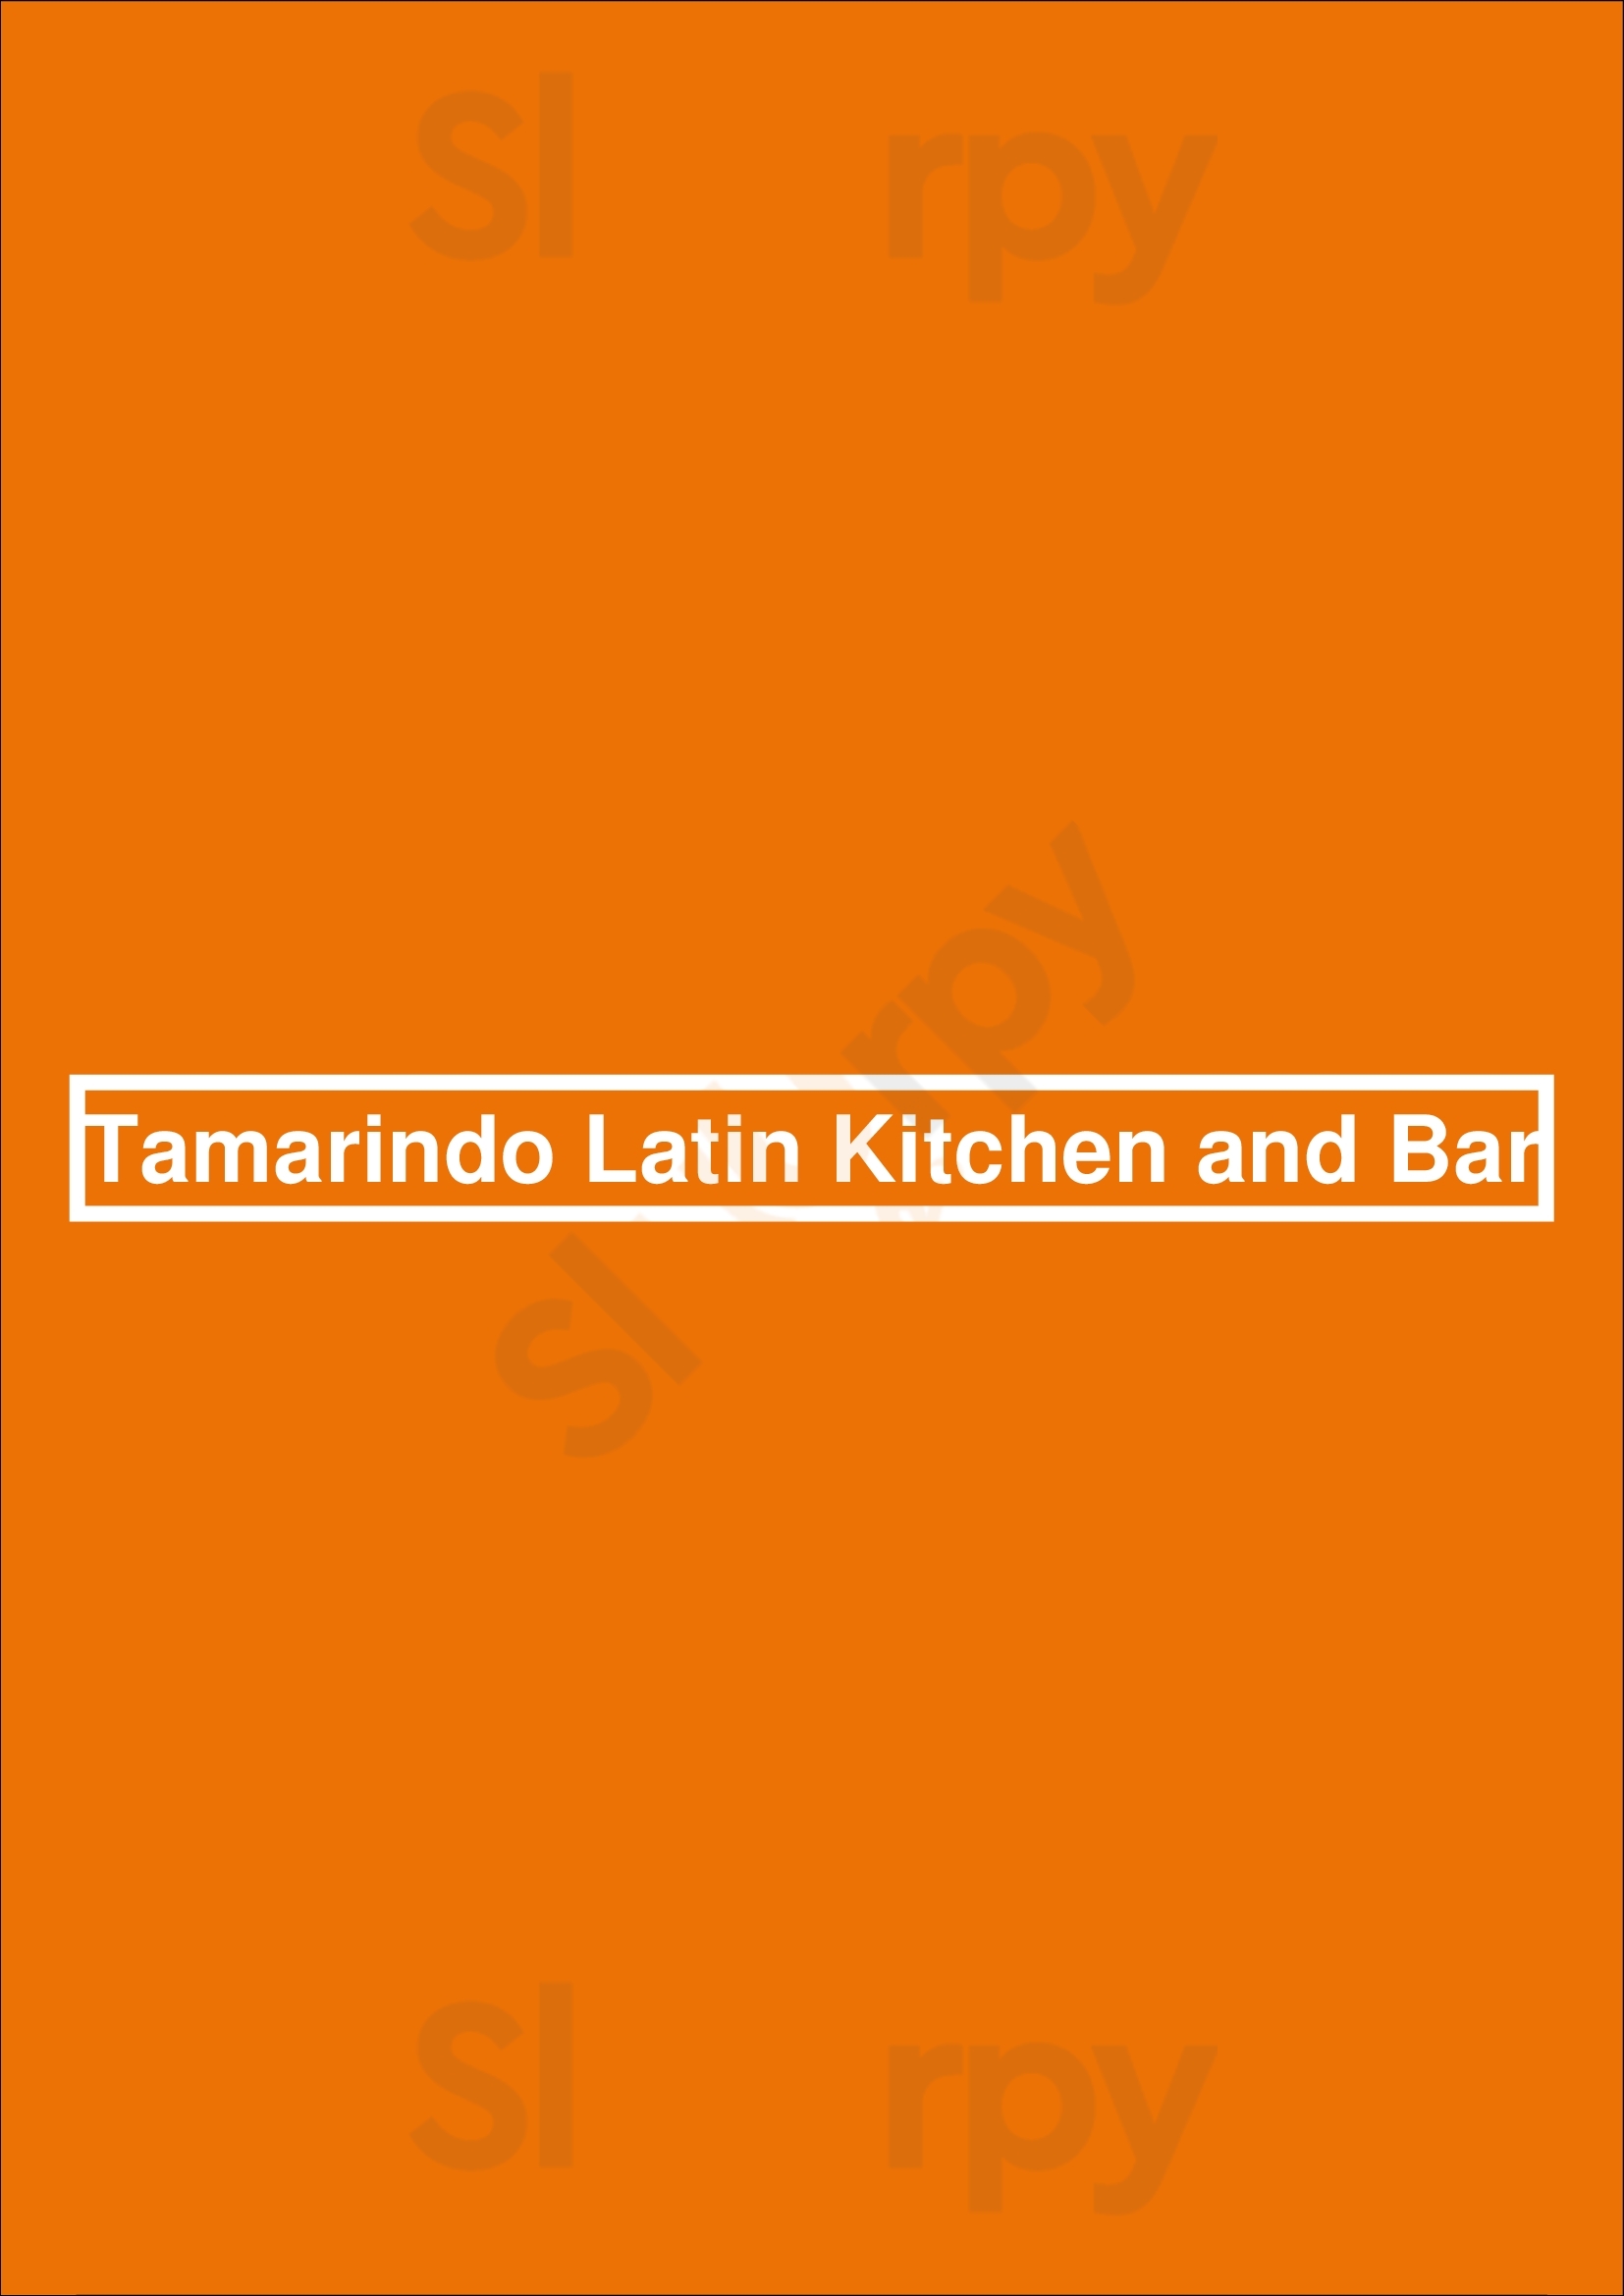 Tamarindo Latin Kitchen And Bar San Diego Menu - 1